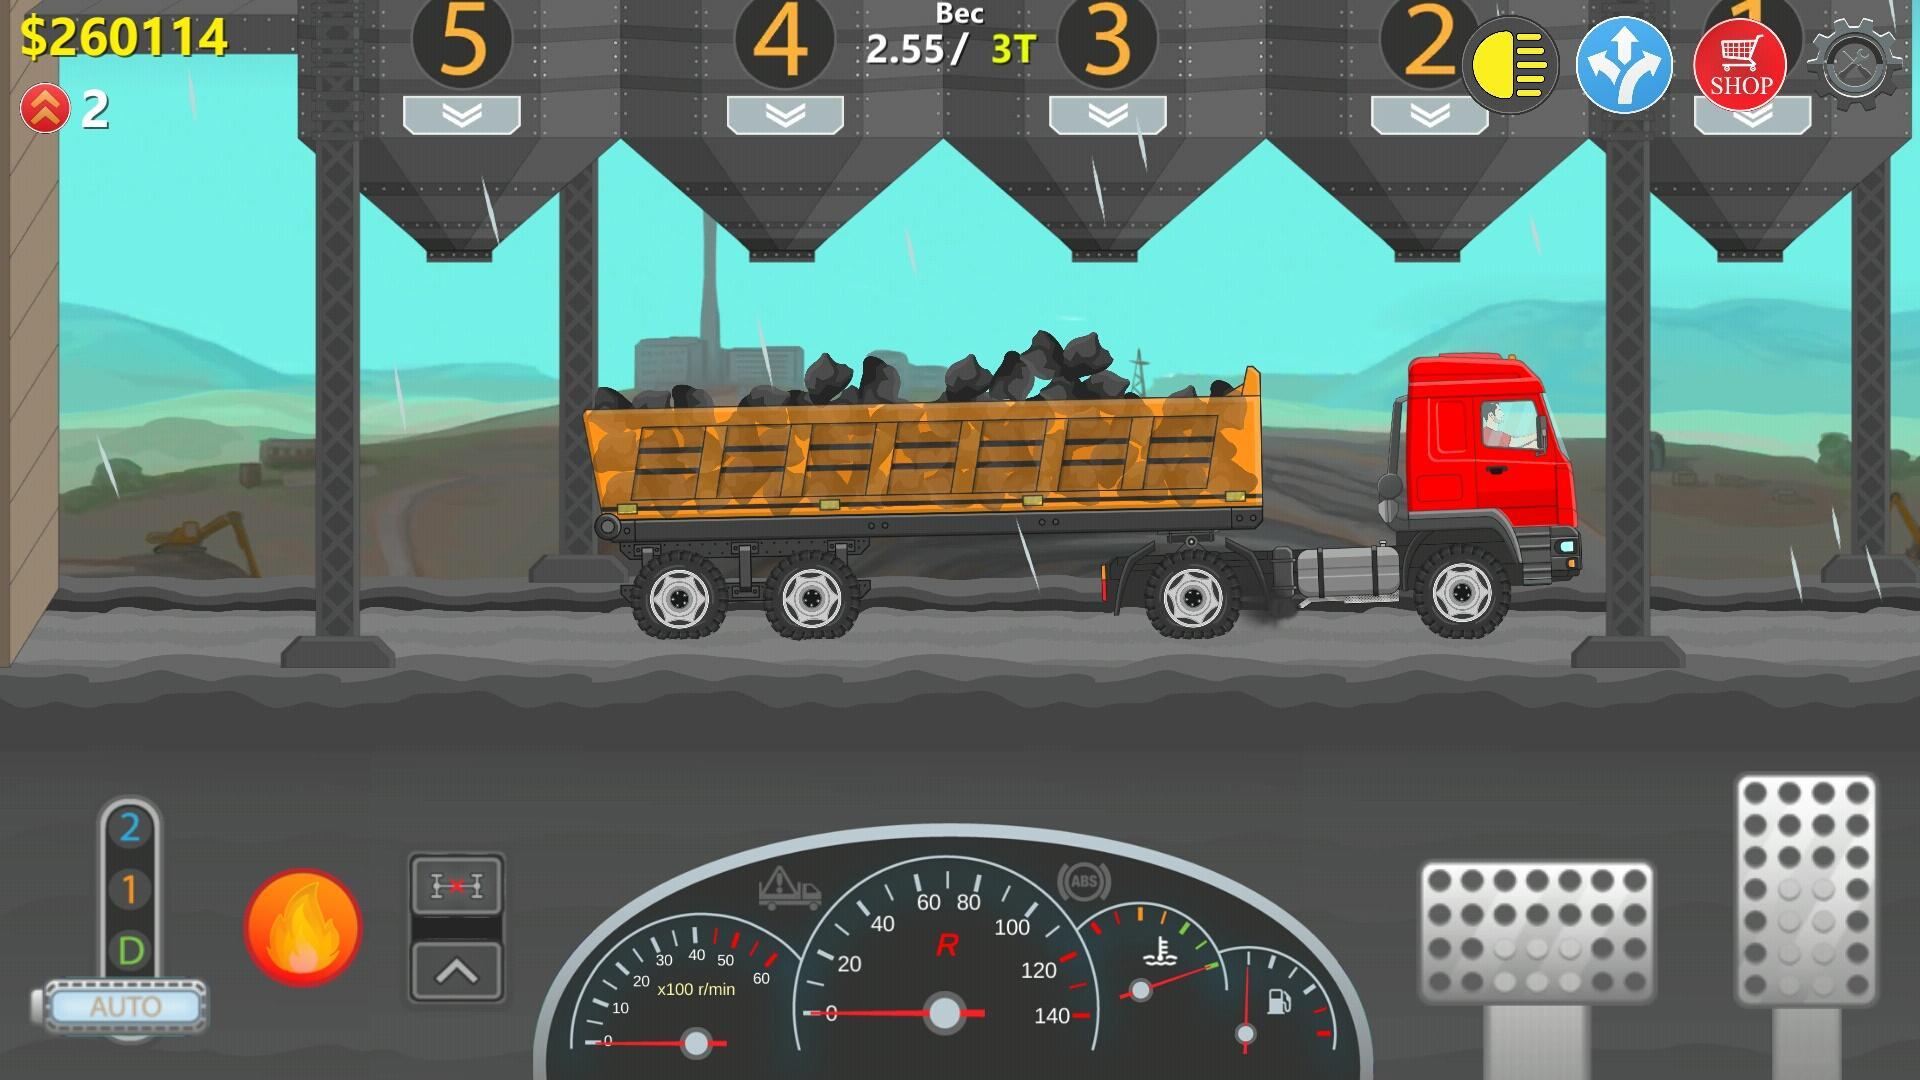 Игра взломка поезда. Trucker real Wheels - Simulator. Дальнобойщики 2 d. Дальнобойщики 2d грузовик симулятор мод. Игры 2 d про дальнобойщиков на андроид.